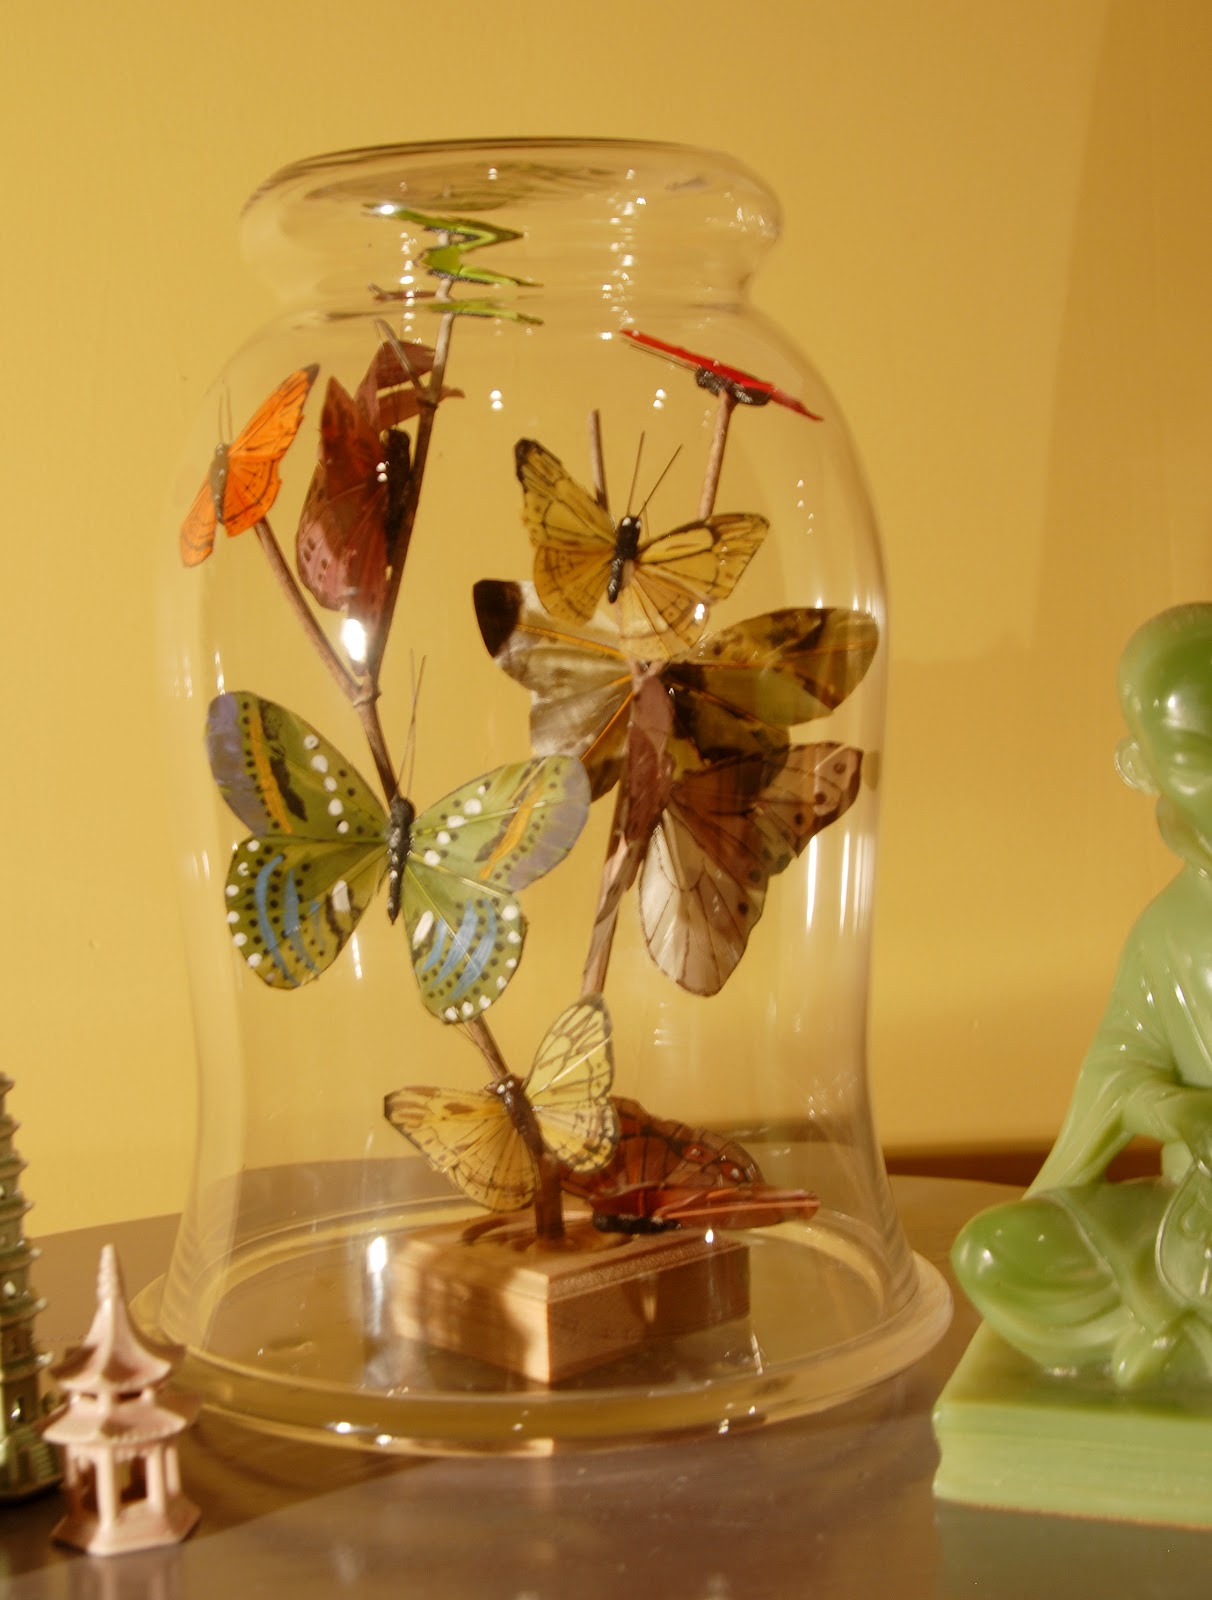 mark-montano-butterflies-under-glass